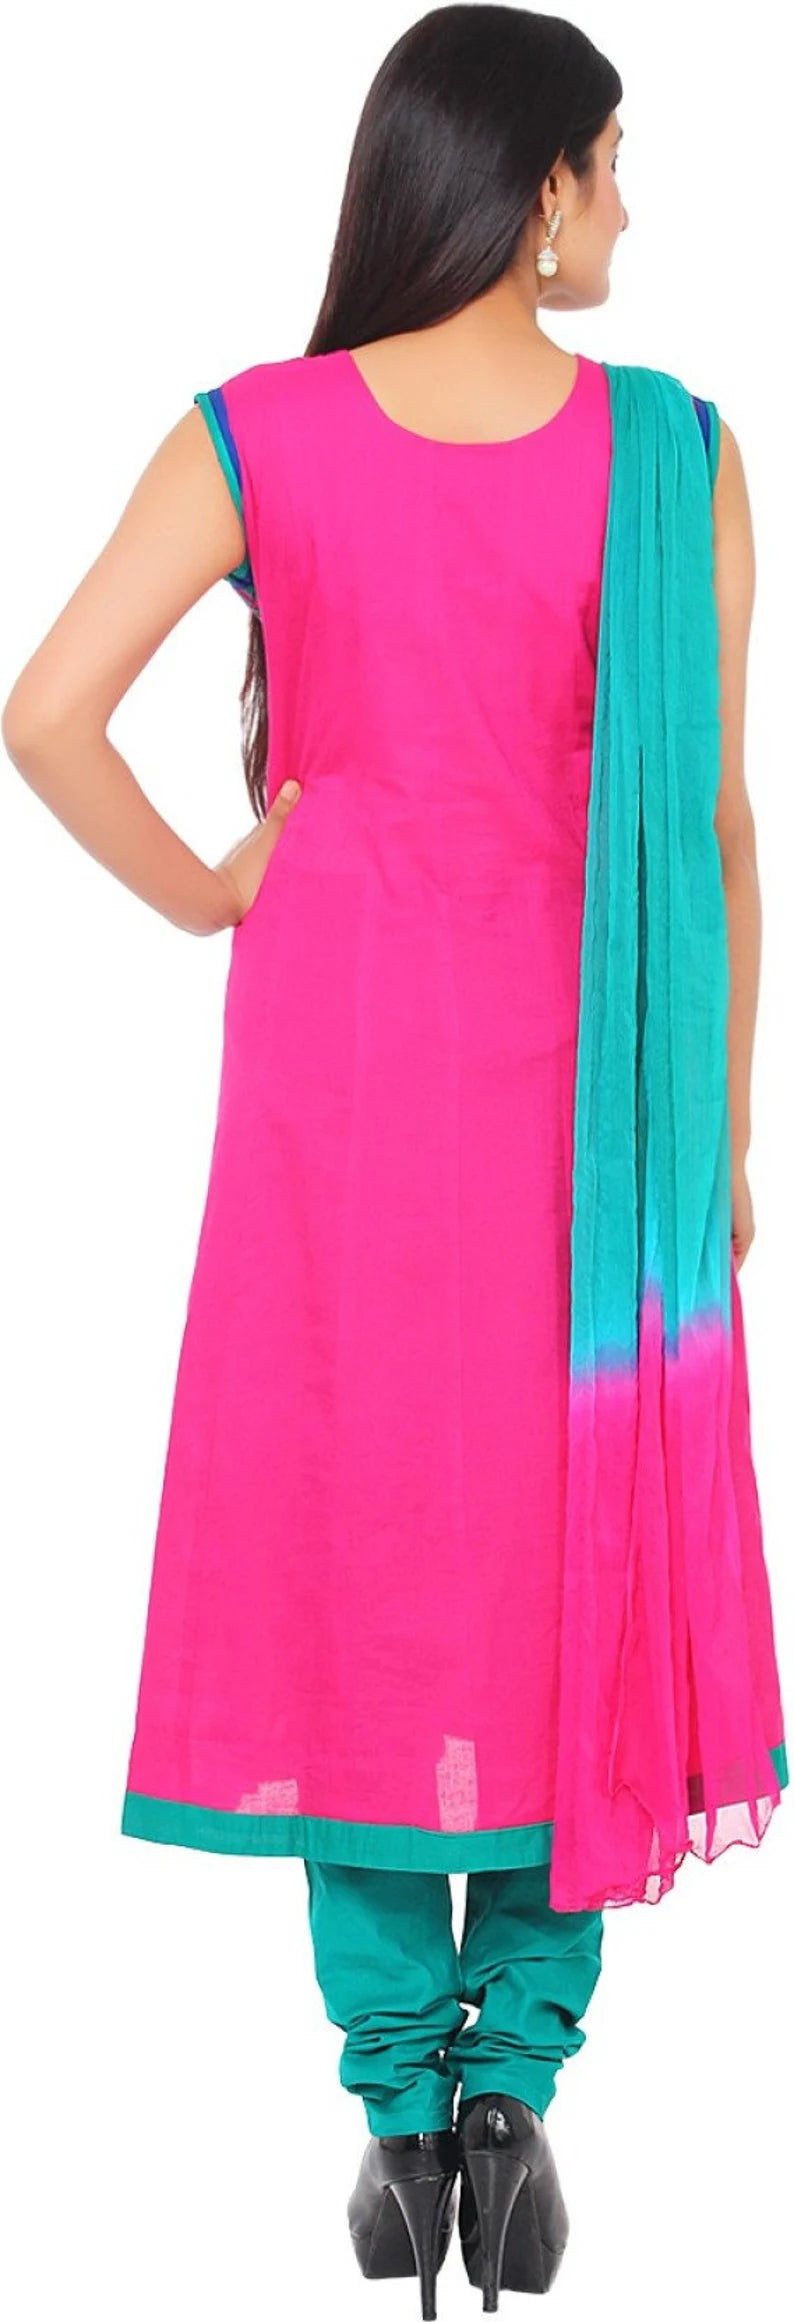 Pink  Salwar Kameez Readymade , Indian Salwar Kameez for Women, Salwar Kameez Embroidered , Chest -40 Inches  FREE  DELIVERY